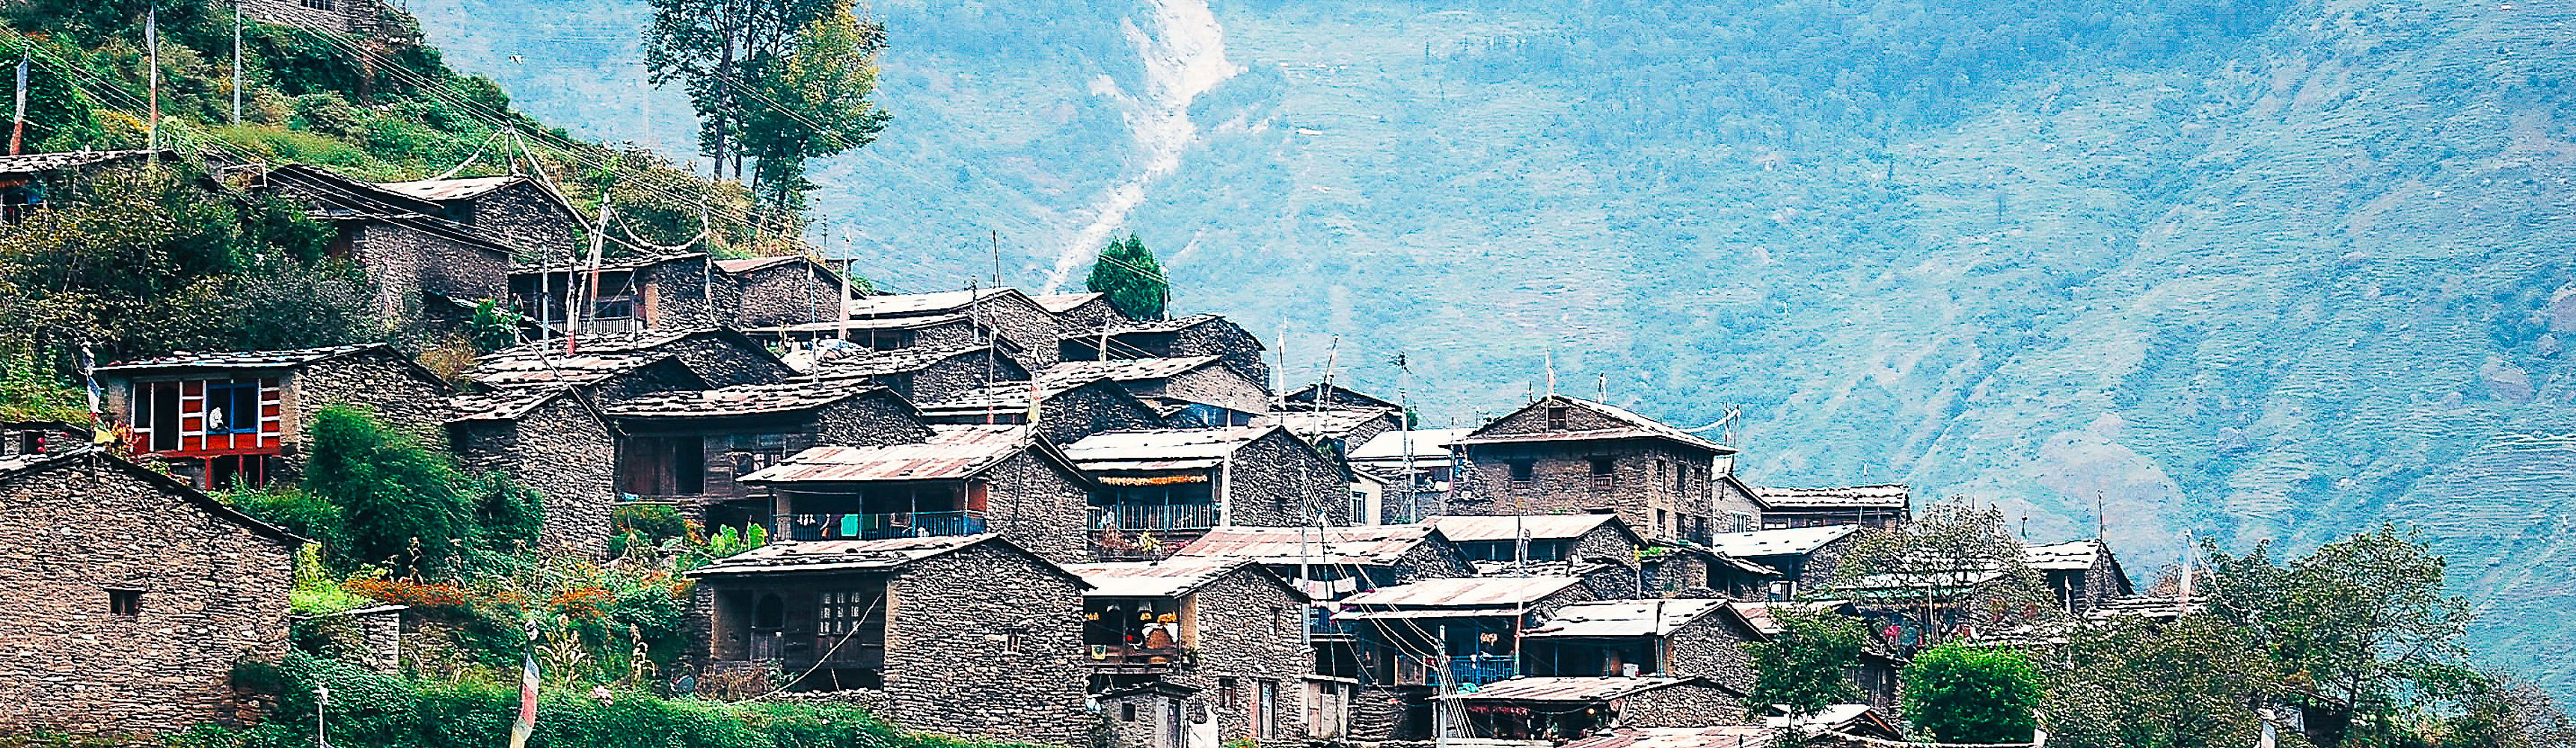 Tre settimane in Nepal